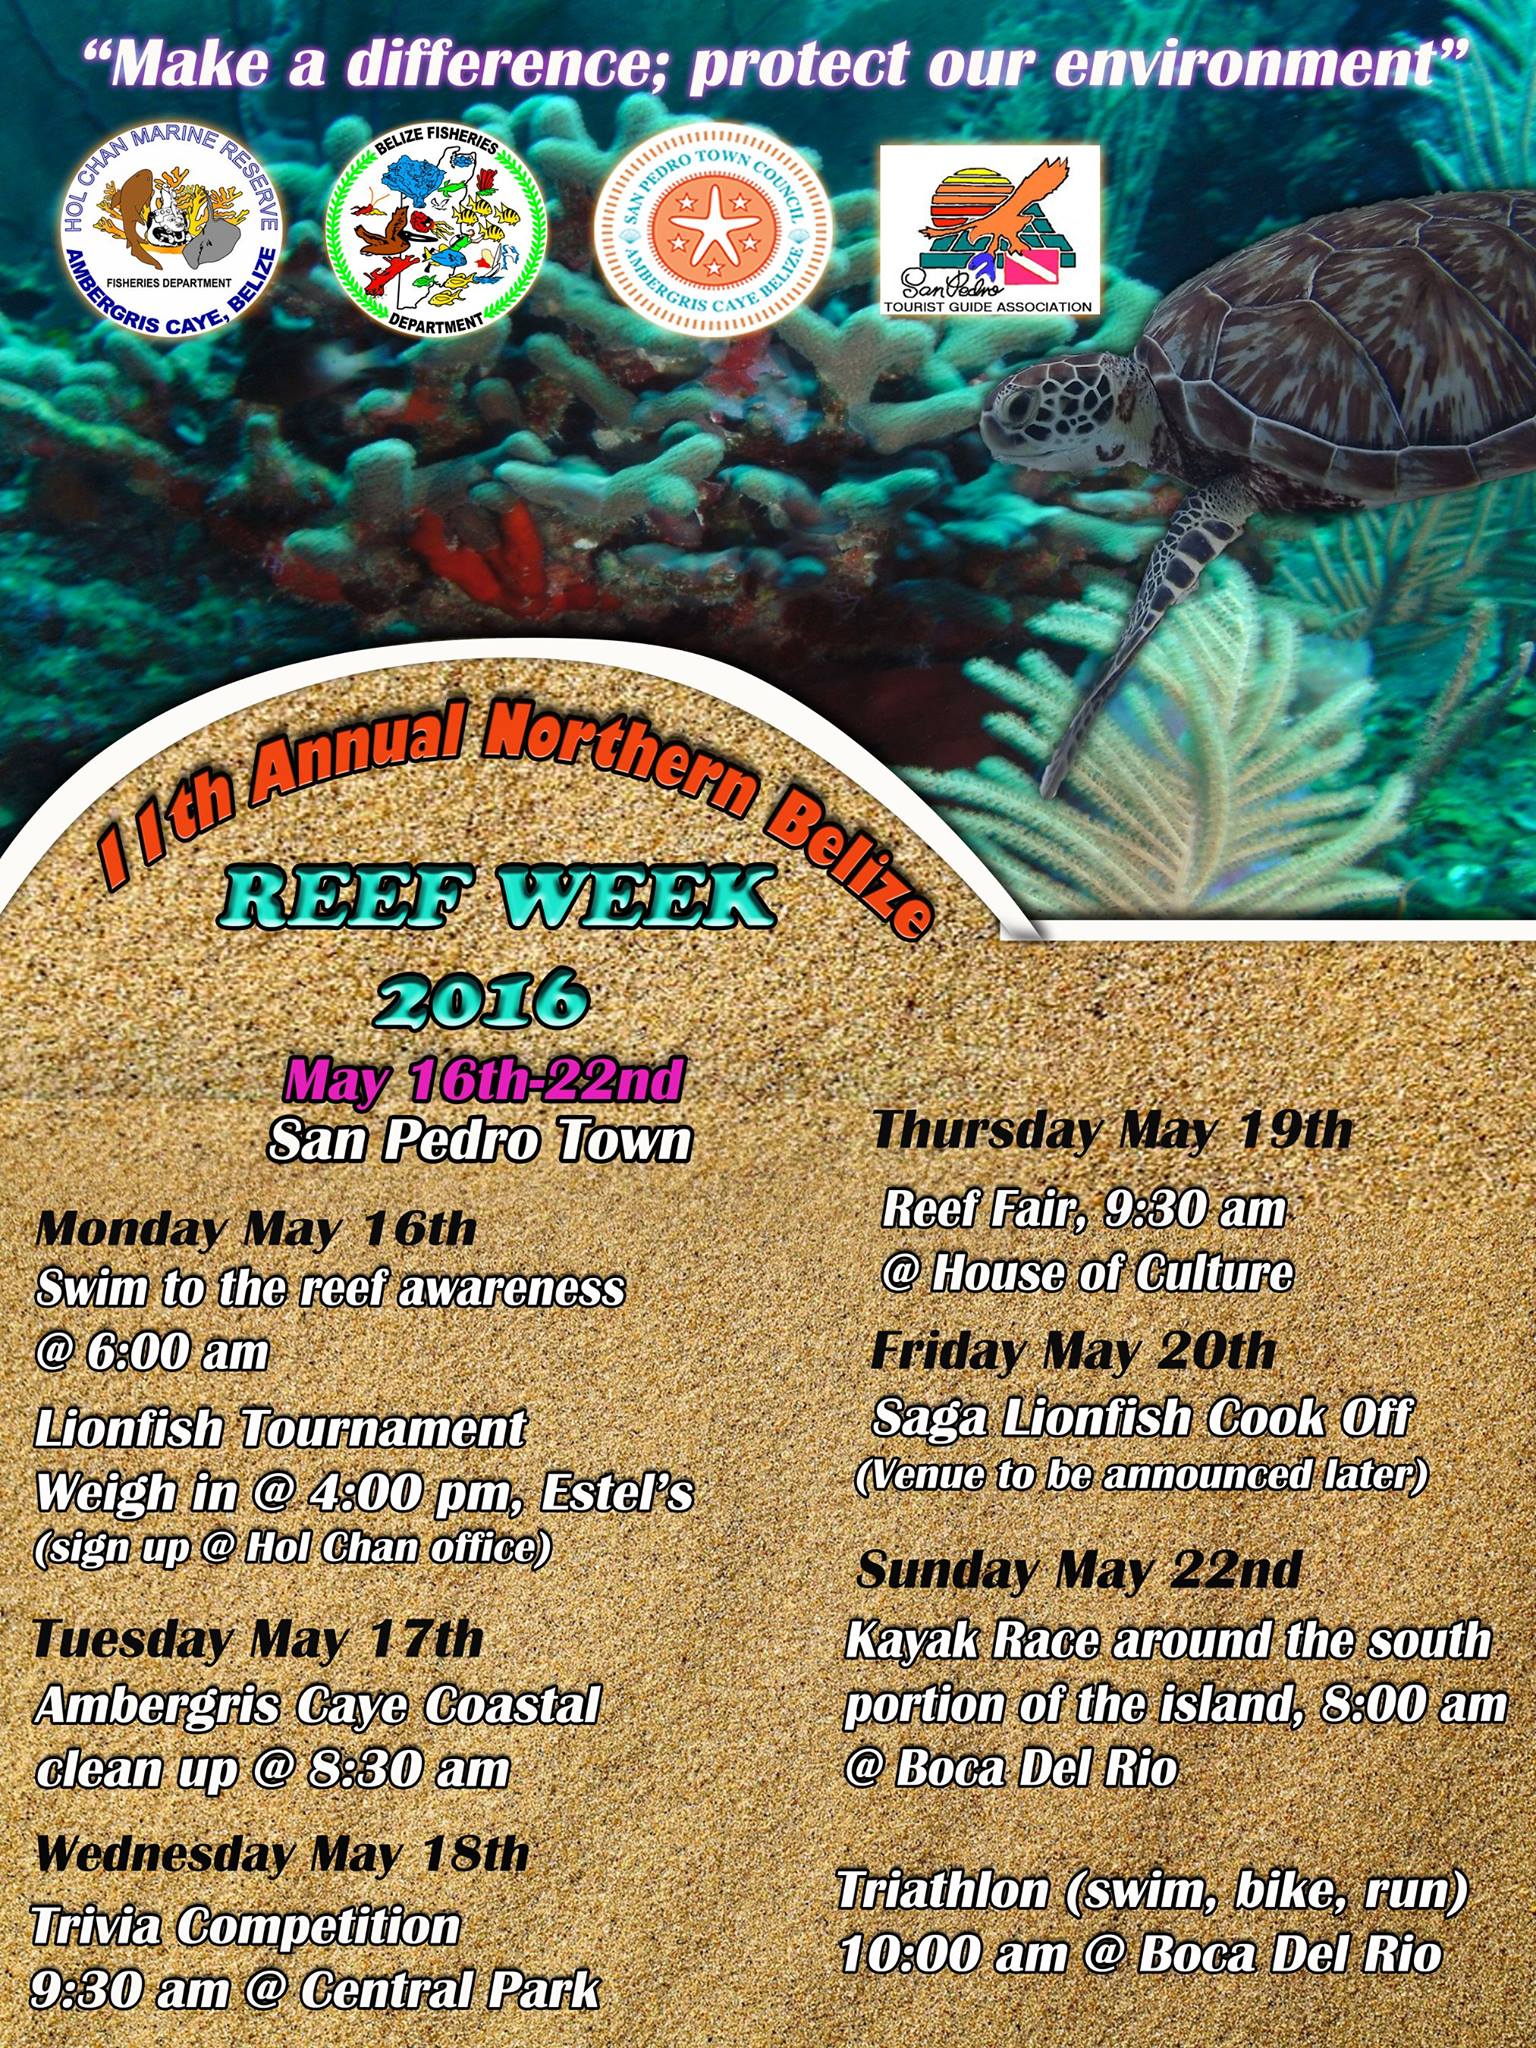 Reef Week 2016 Schedule